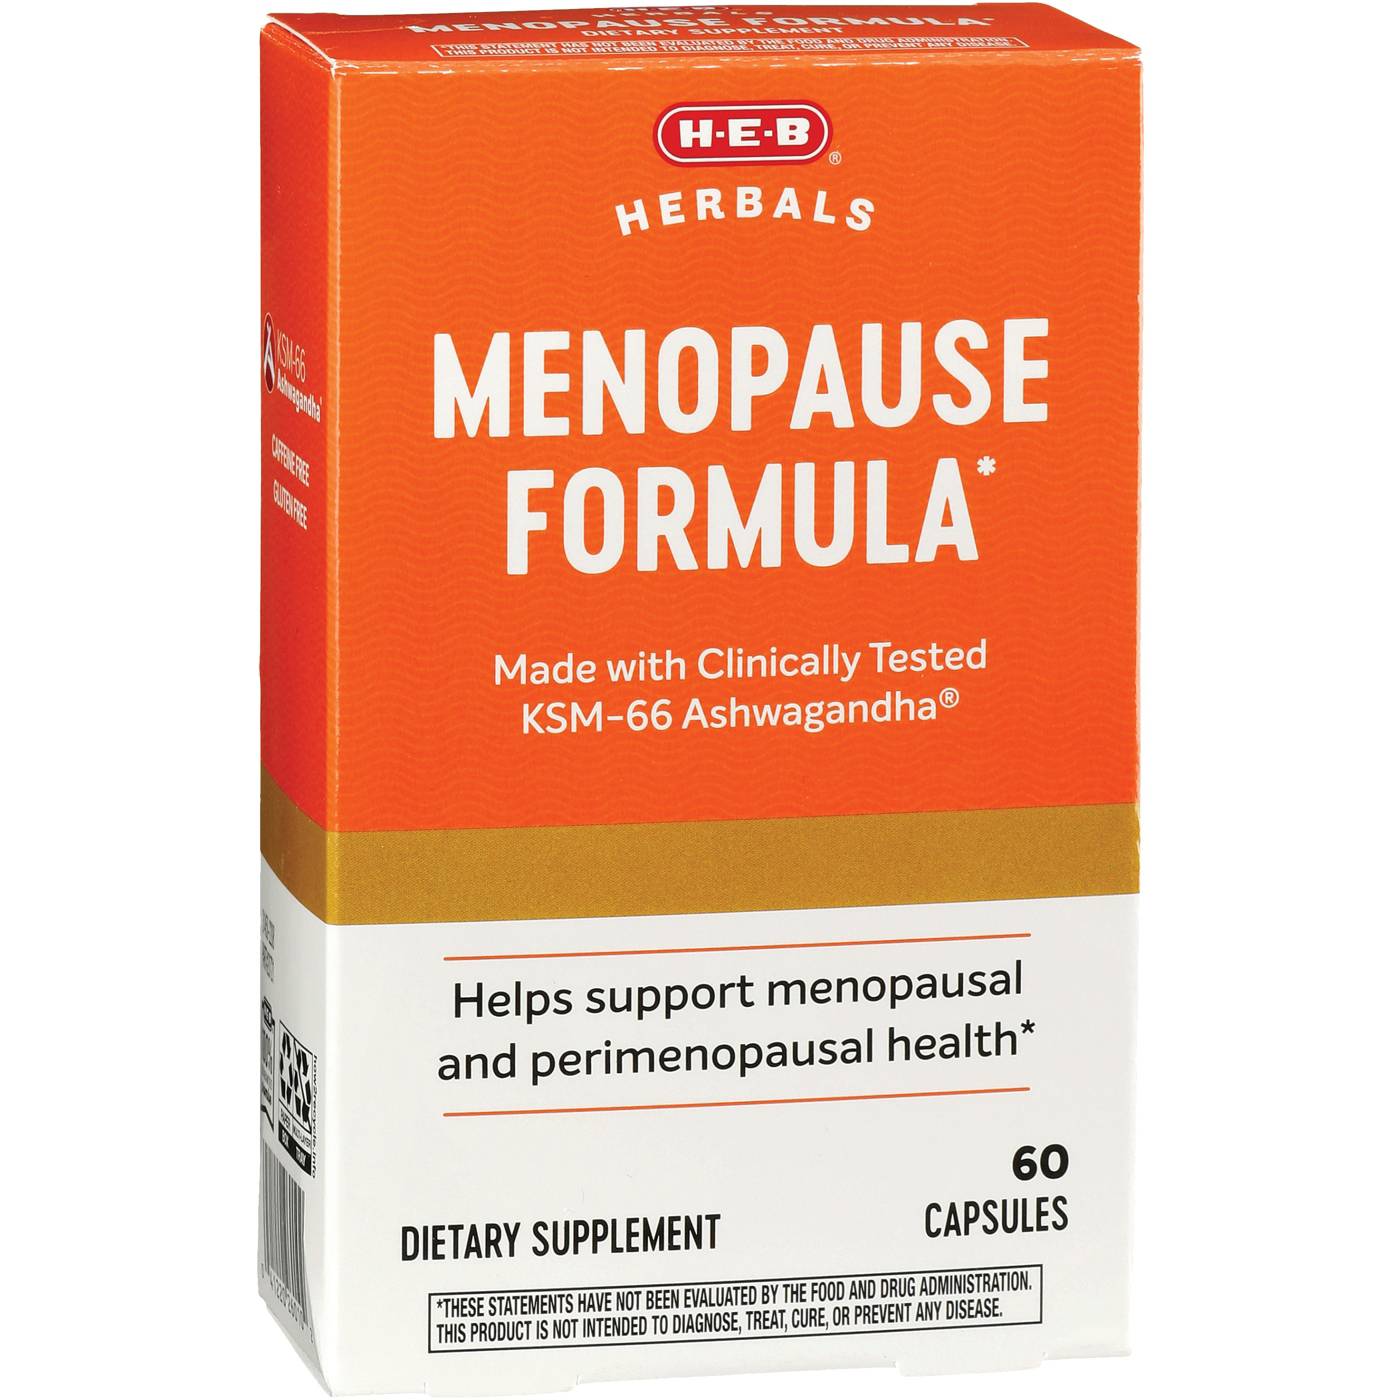 H-E-B Herbals Menopause Formula Capsules; image 1 of 2